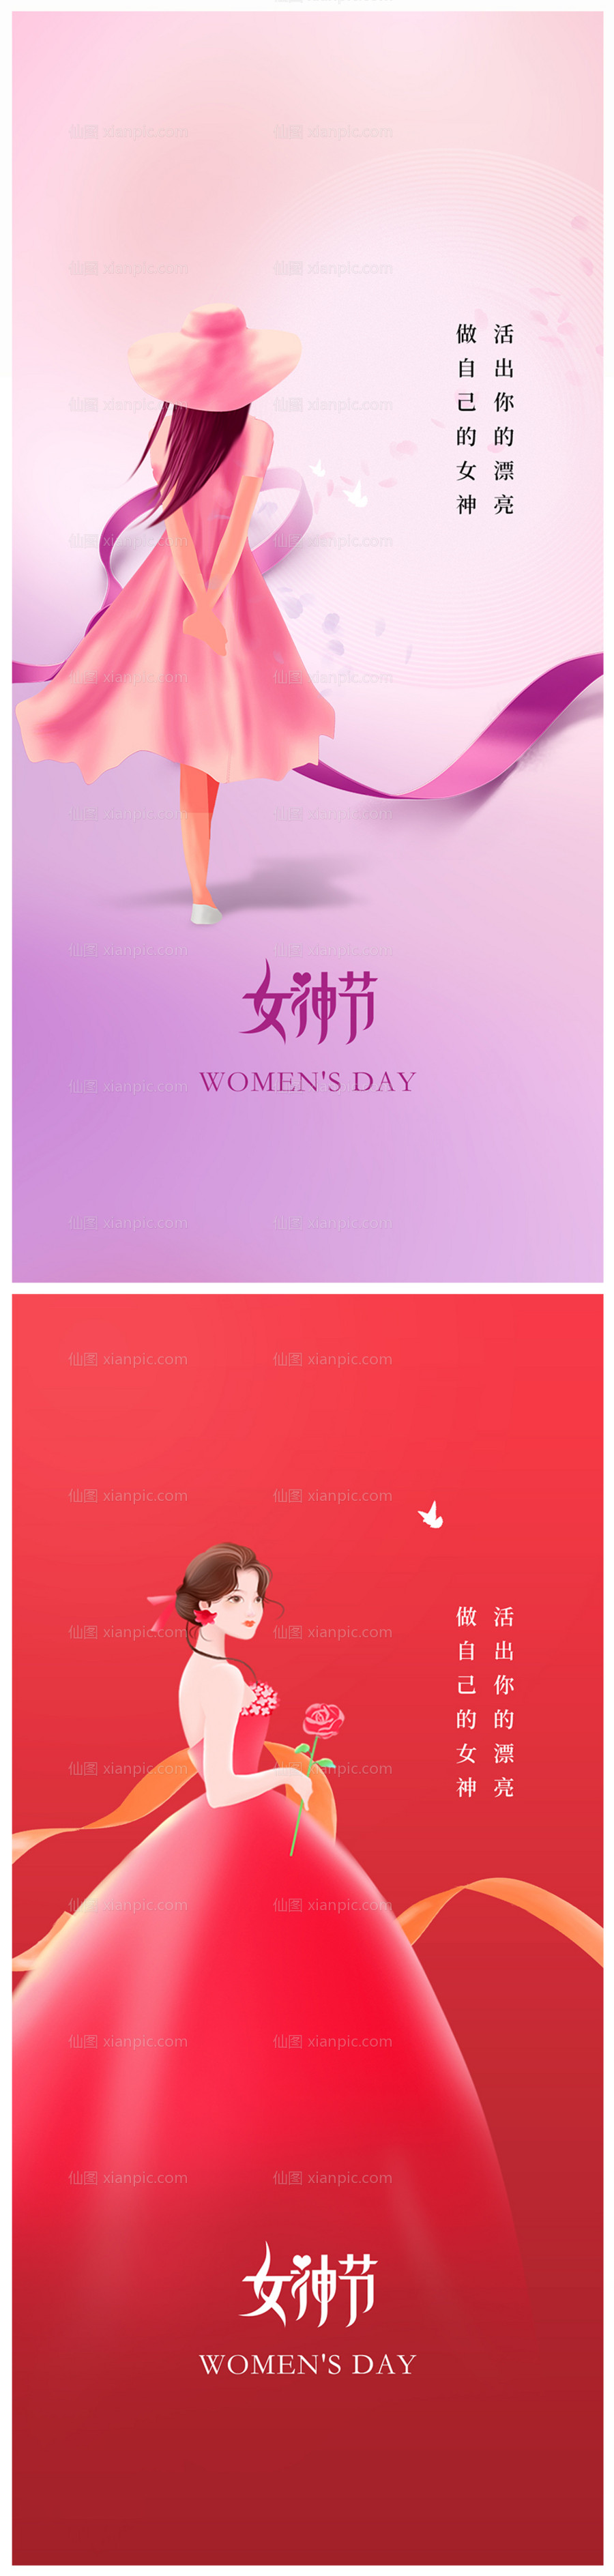 素材乐-地产三八女神节妇女节系列海报